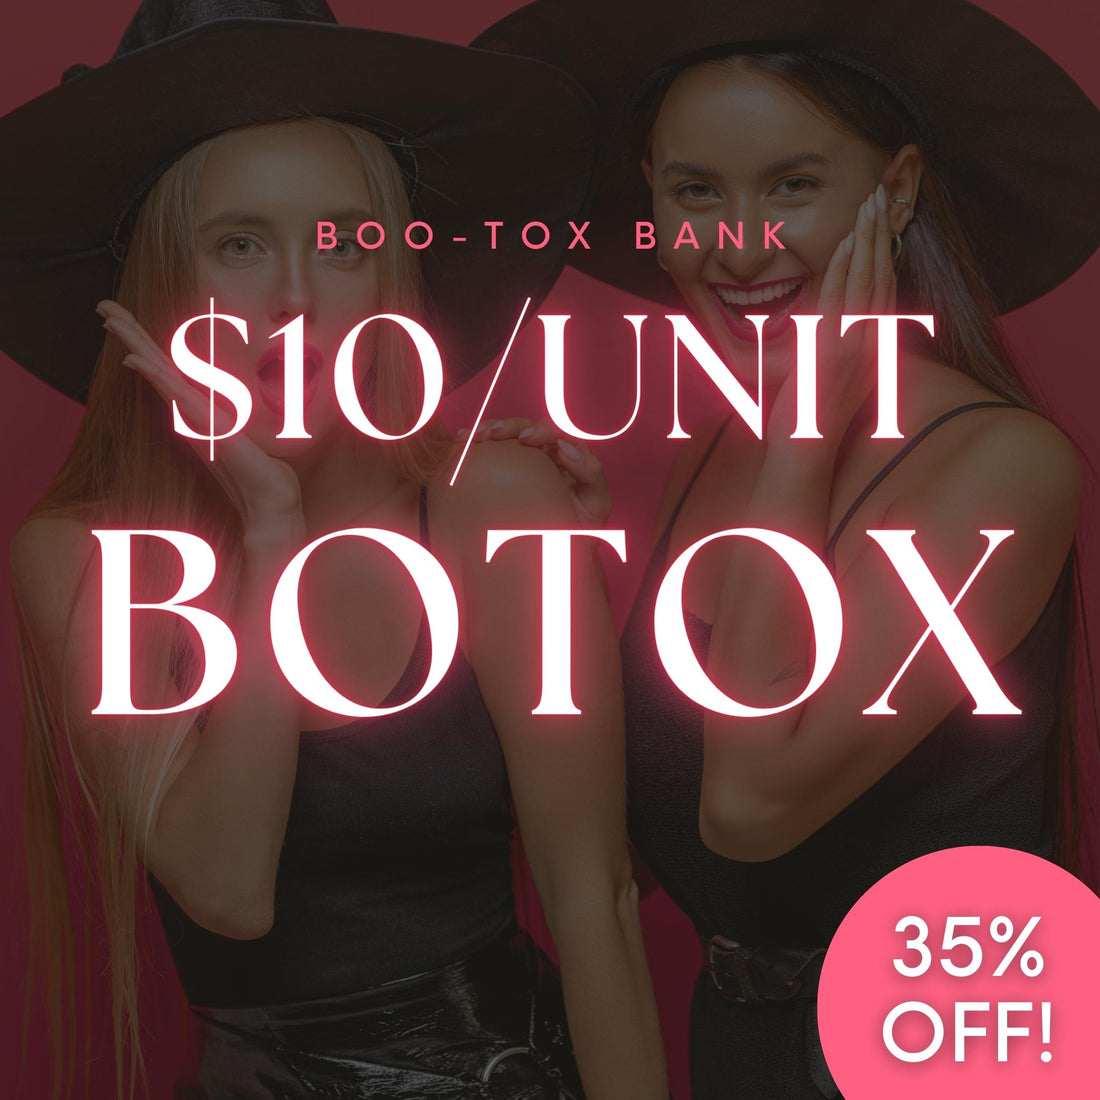 $10/Unit Botox Bank